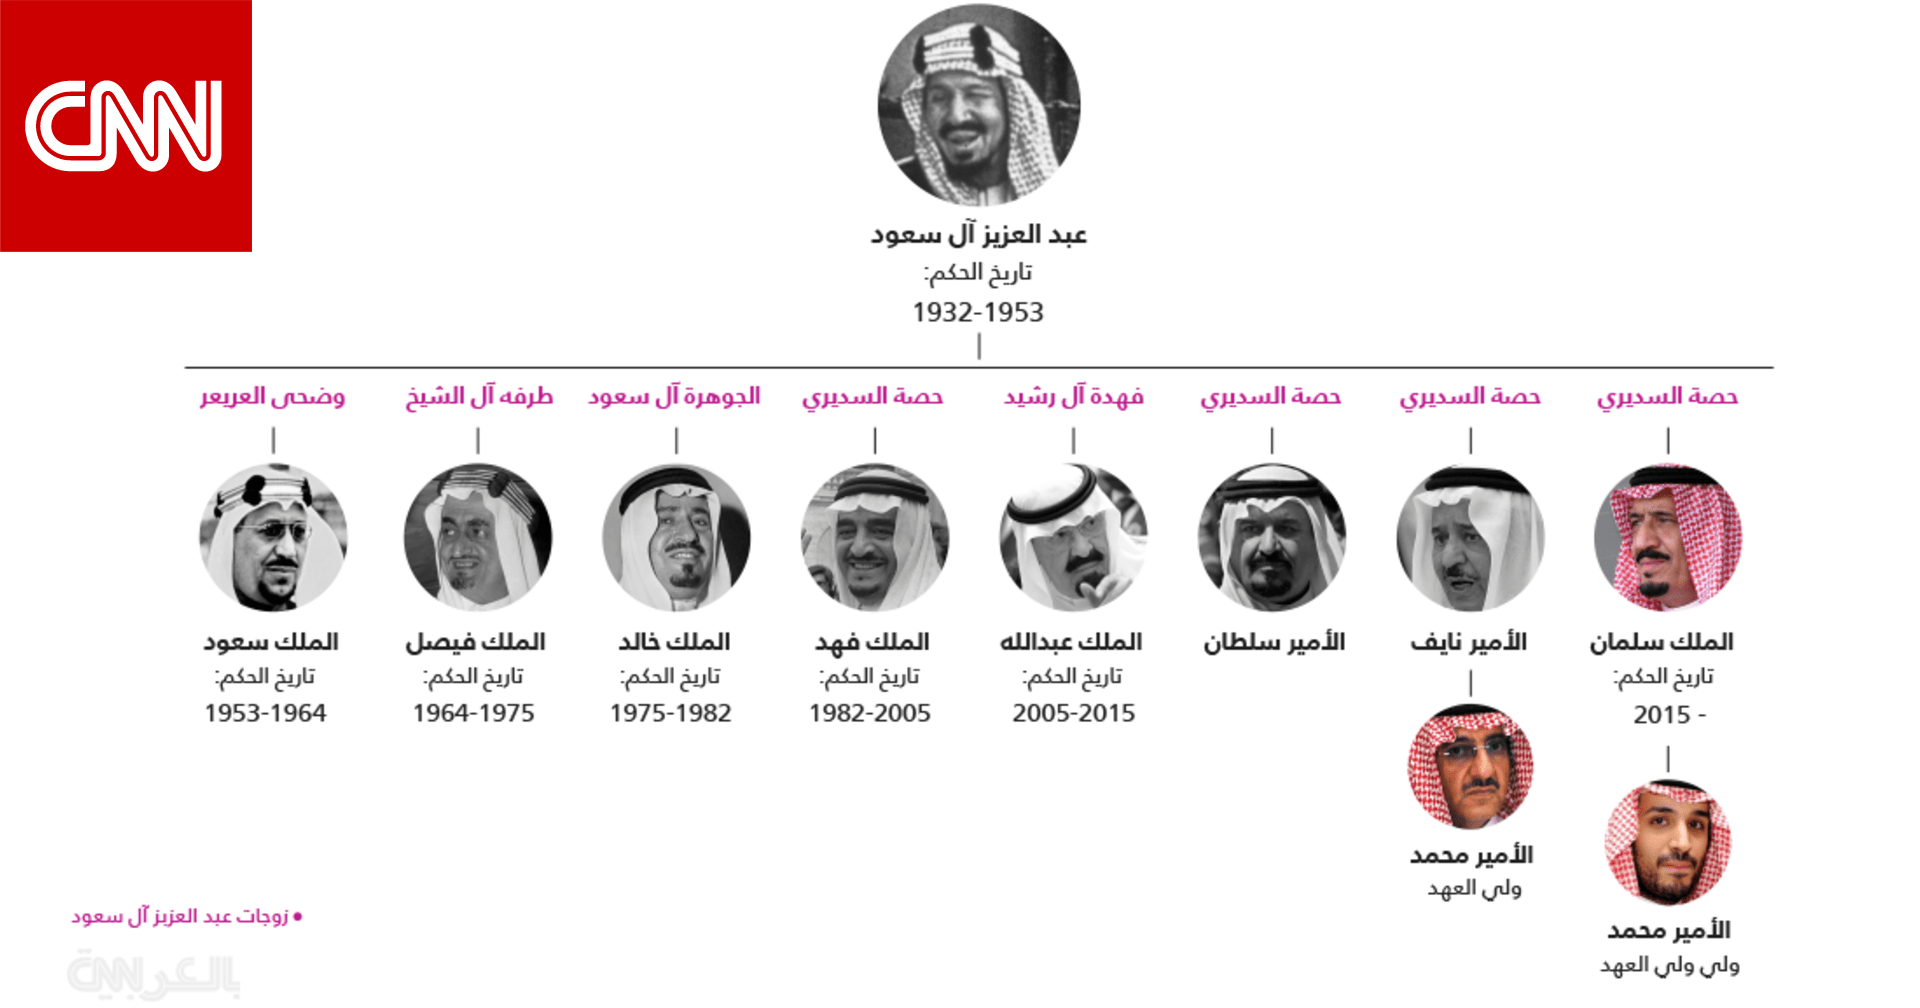 تاريخ الملوك السبعة للمملكة العربية السعودية وتسلسل انتقال الحكم وولاية العهد Cnn Arabic